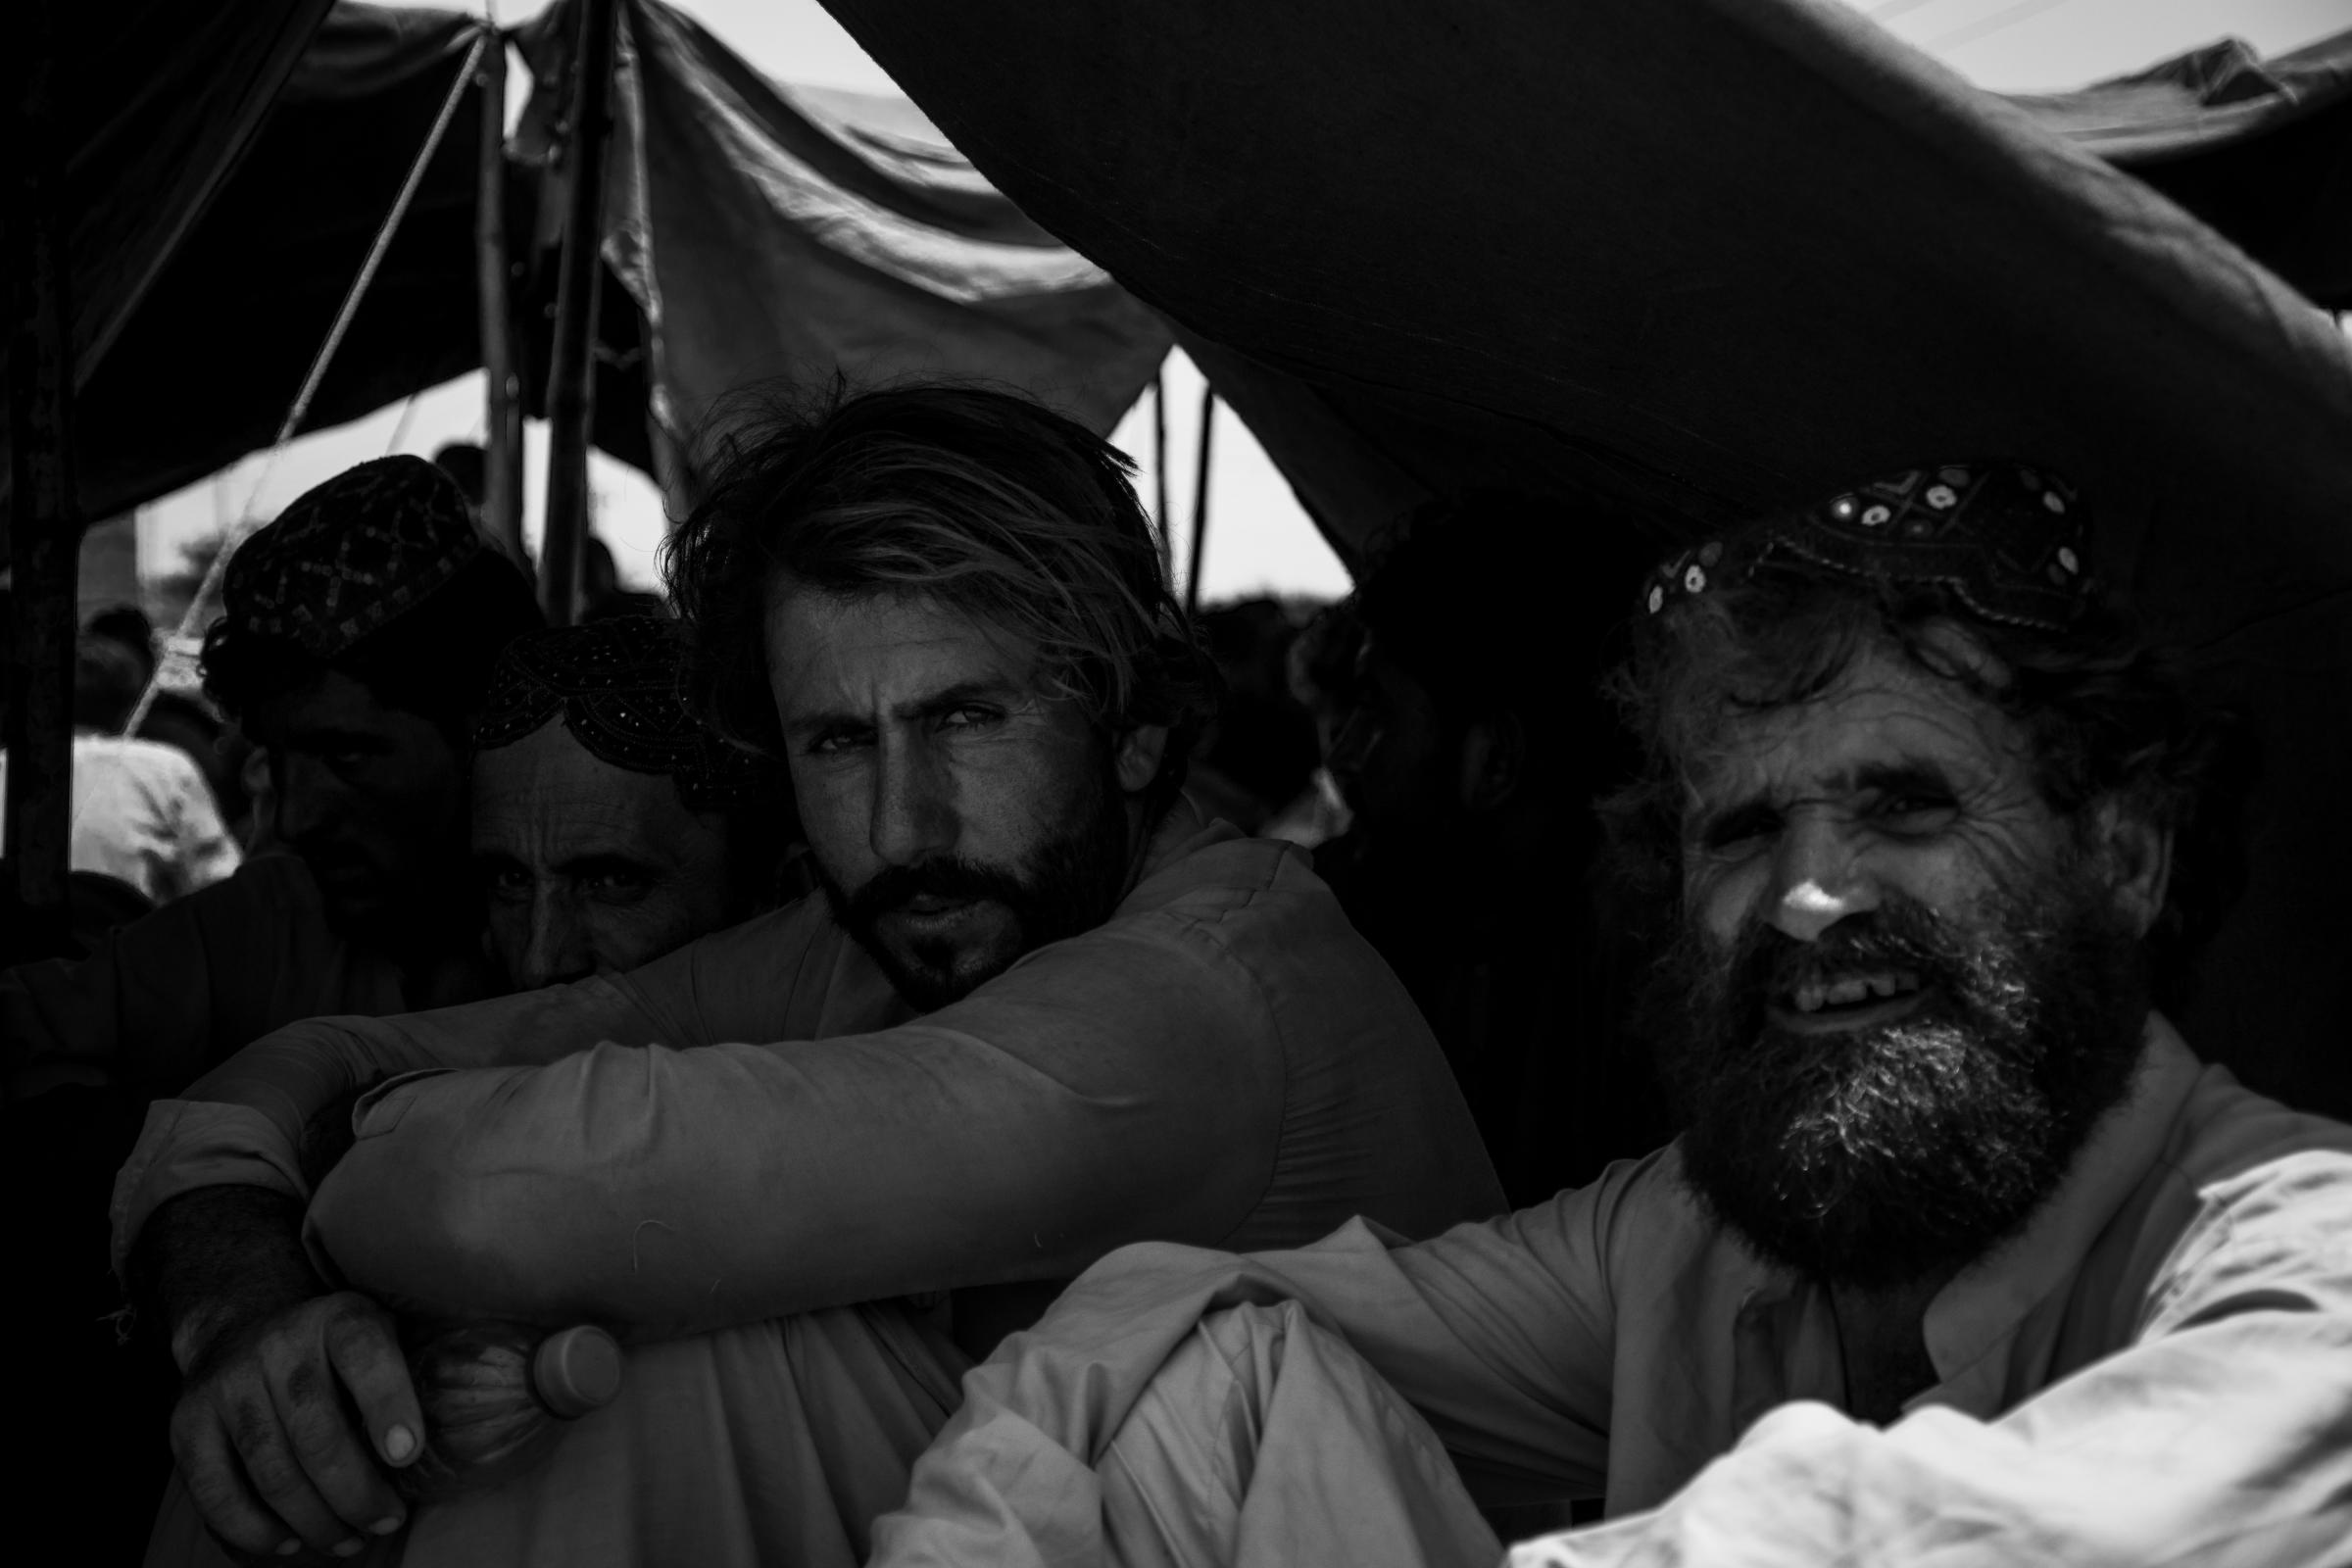 Balochistan Relief Camp